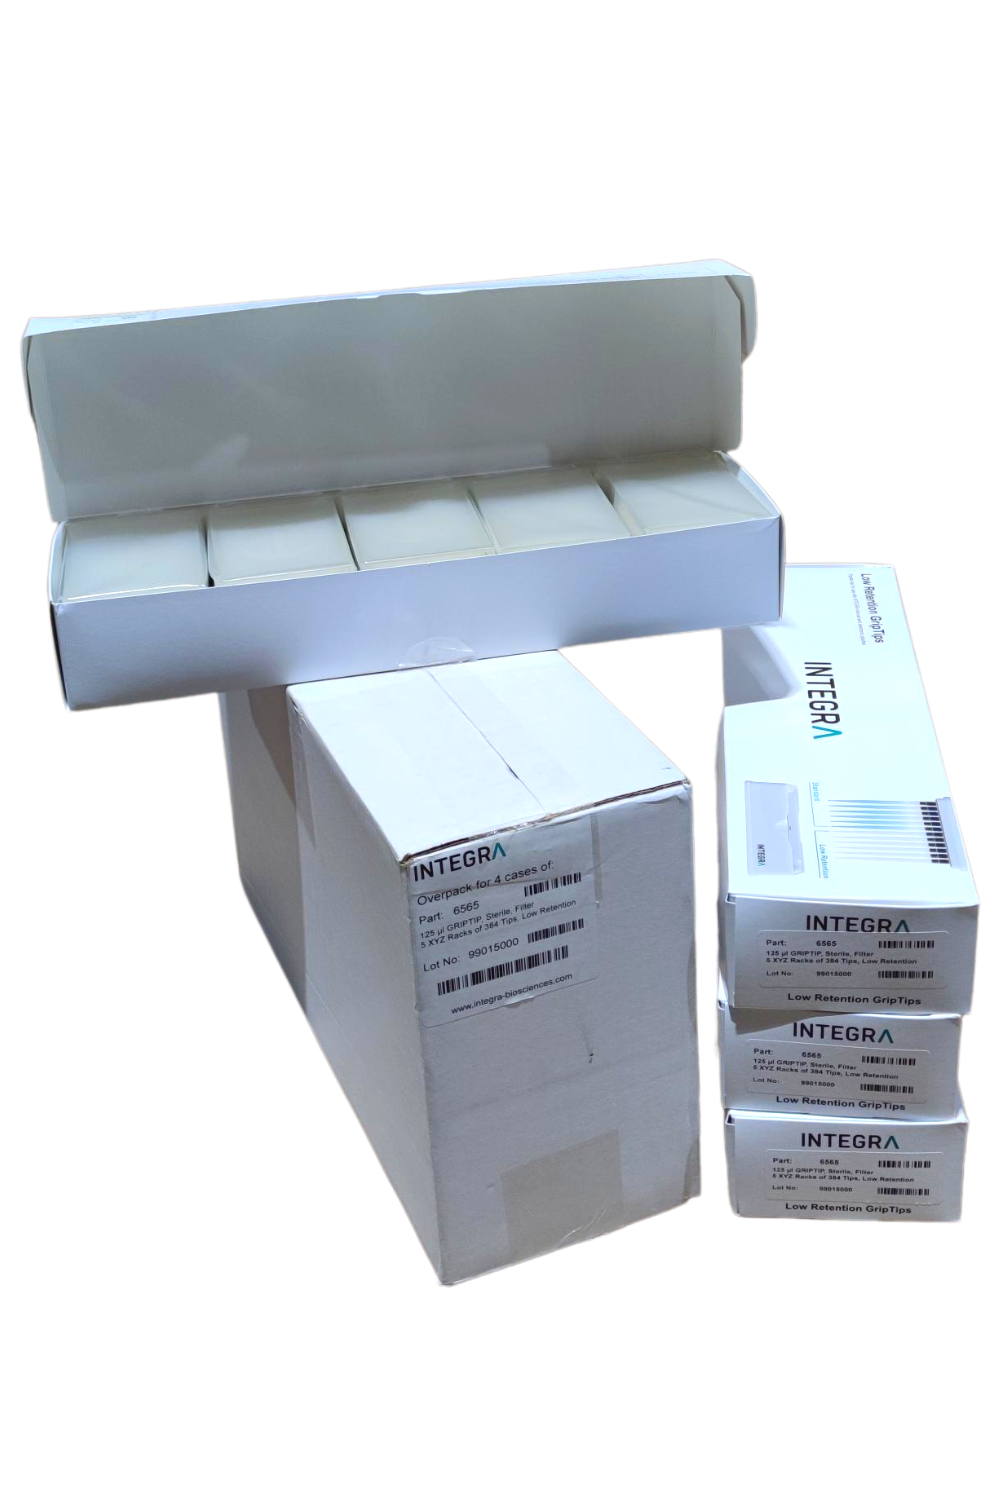 Integra - 125 µL GRIPTIP, Sterile, Filter, 5 XYZ Racks of 384 Tips, Low Retention - Overpack of 4 cases (6565)